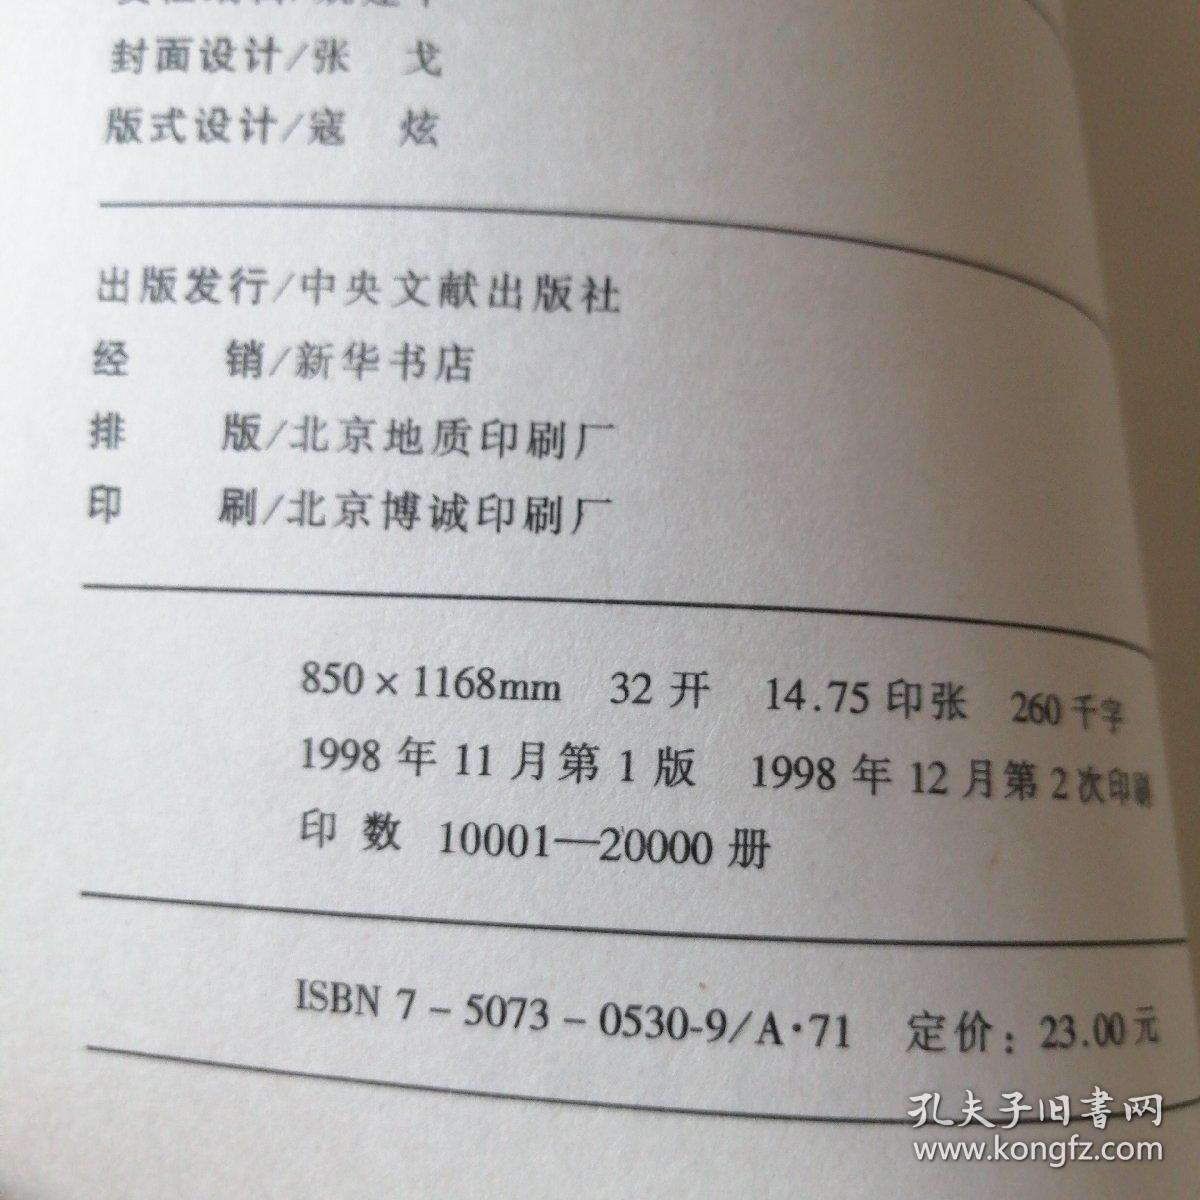 邓小平思想年谱（1975～1997）